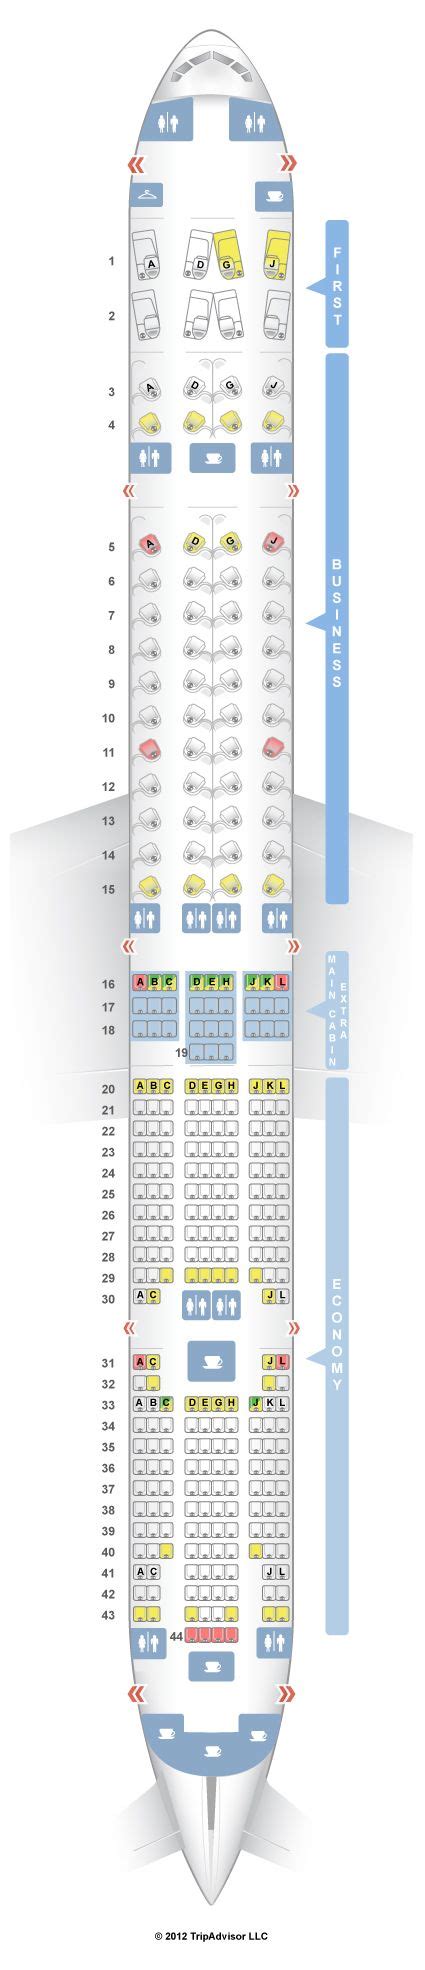 Seatguru Seat Map American Airlines Boeing 777 300er 77w American